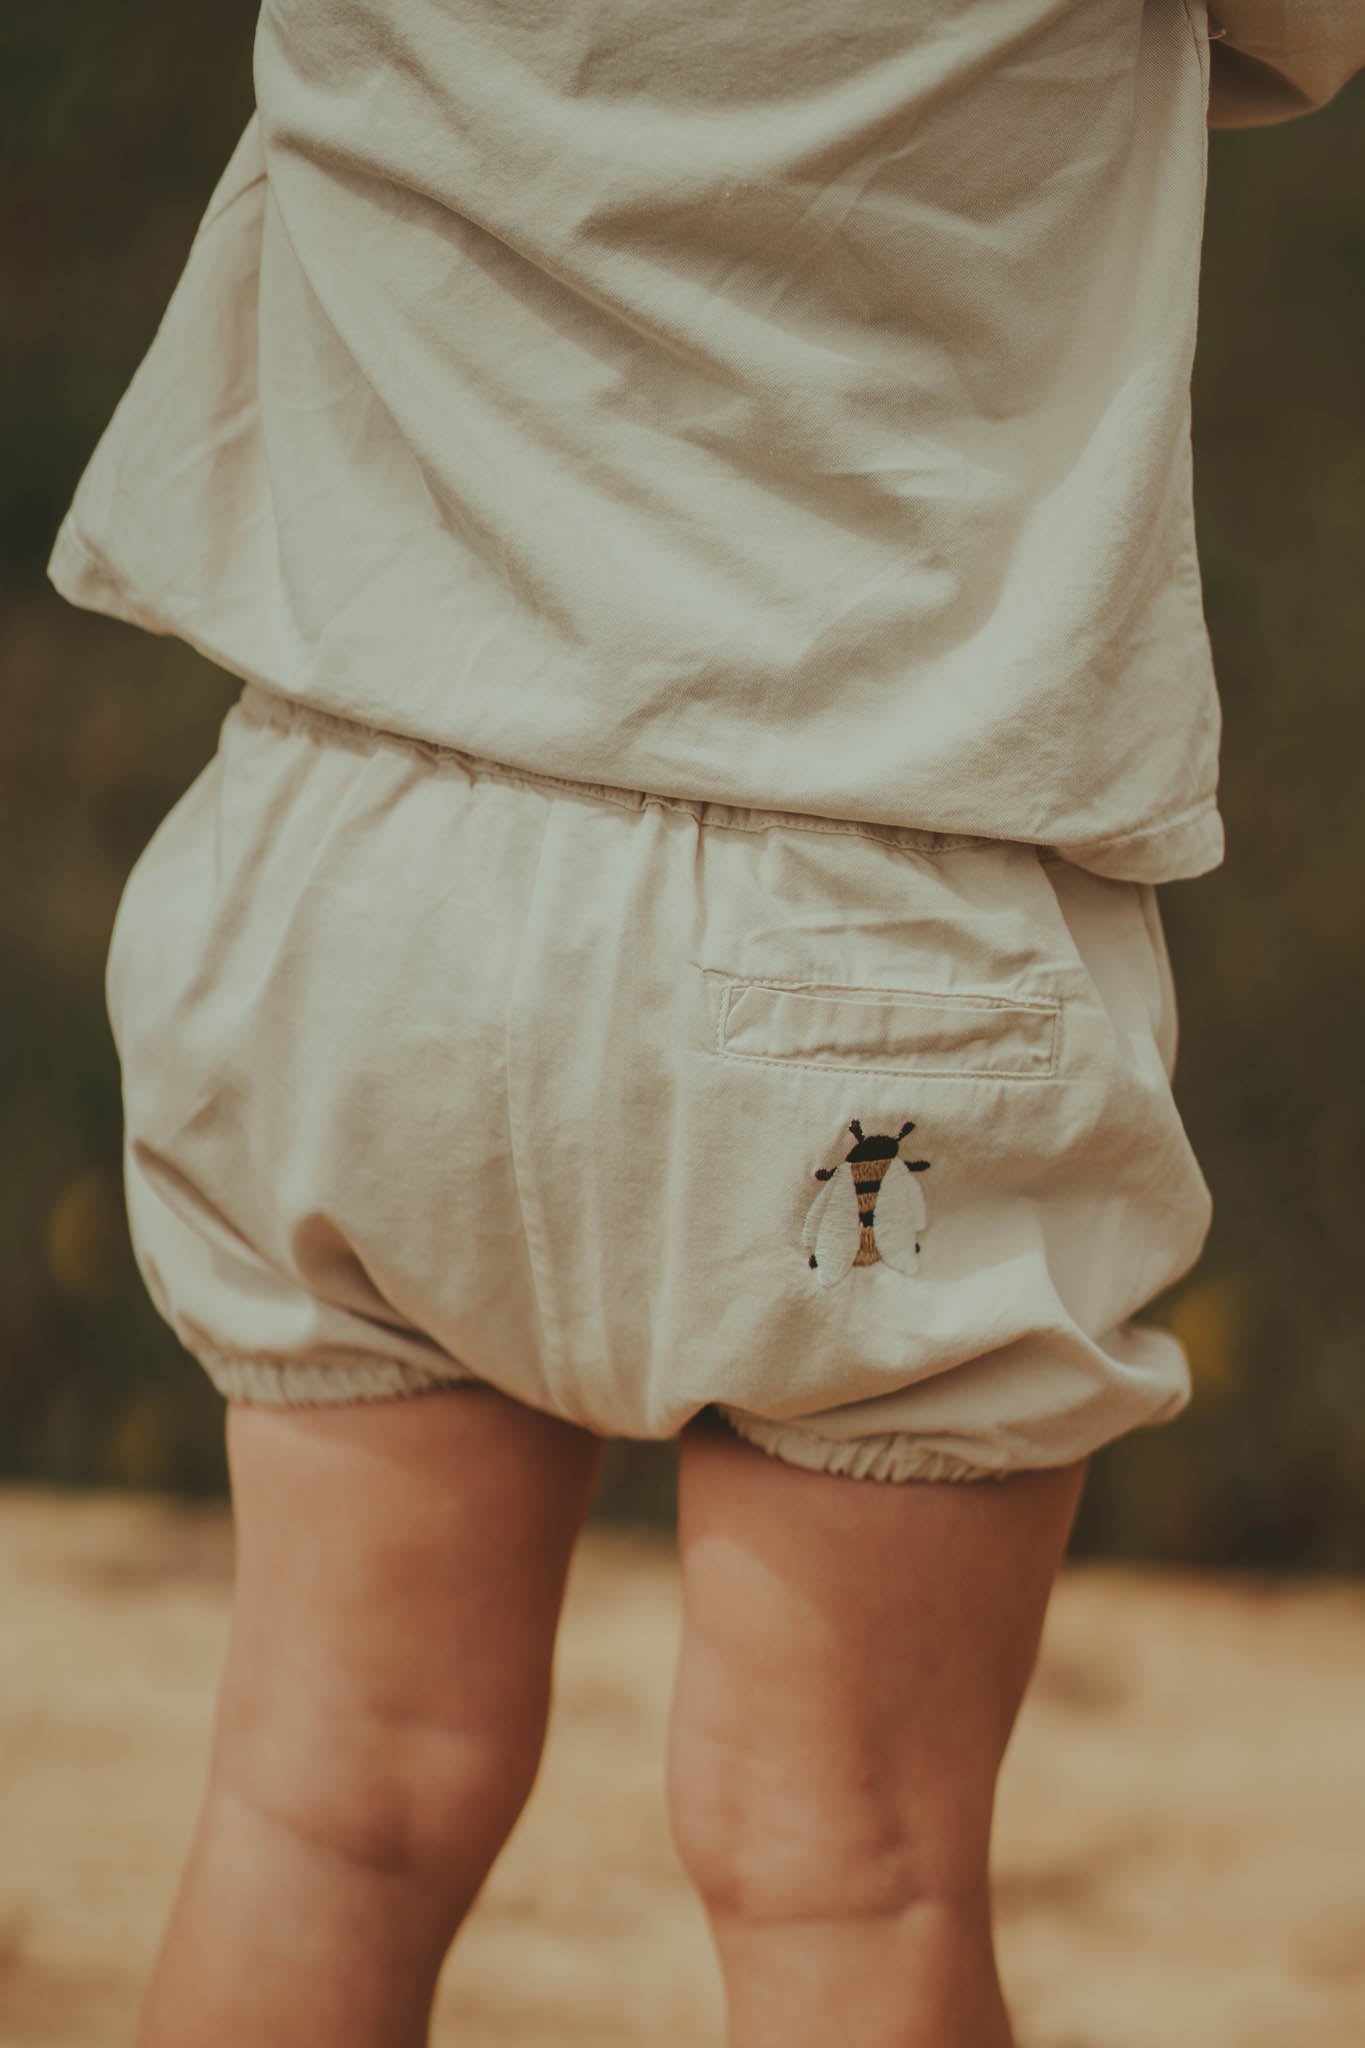 Donsje - Shorts "Hooper Bloomers  Bee" | birch - Leja Concept Store